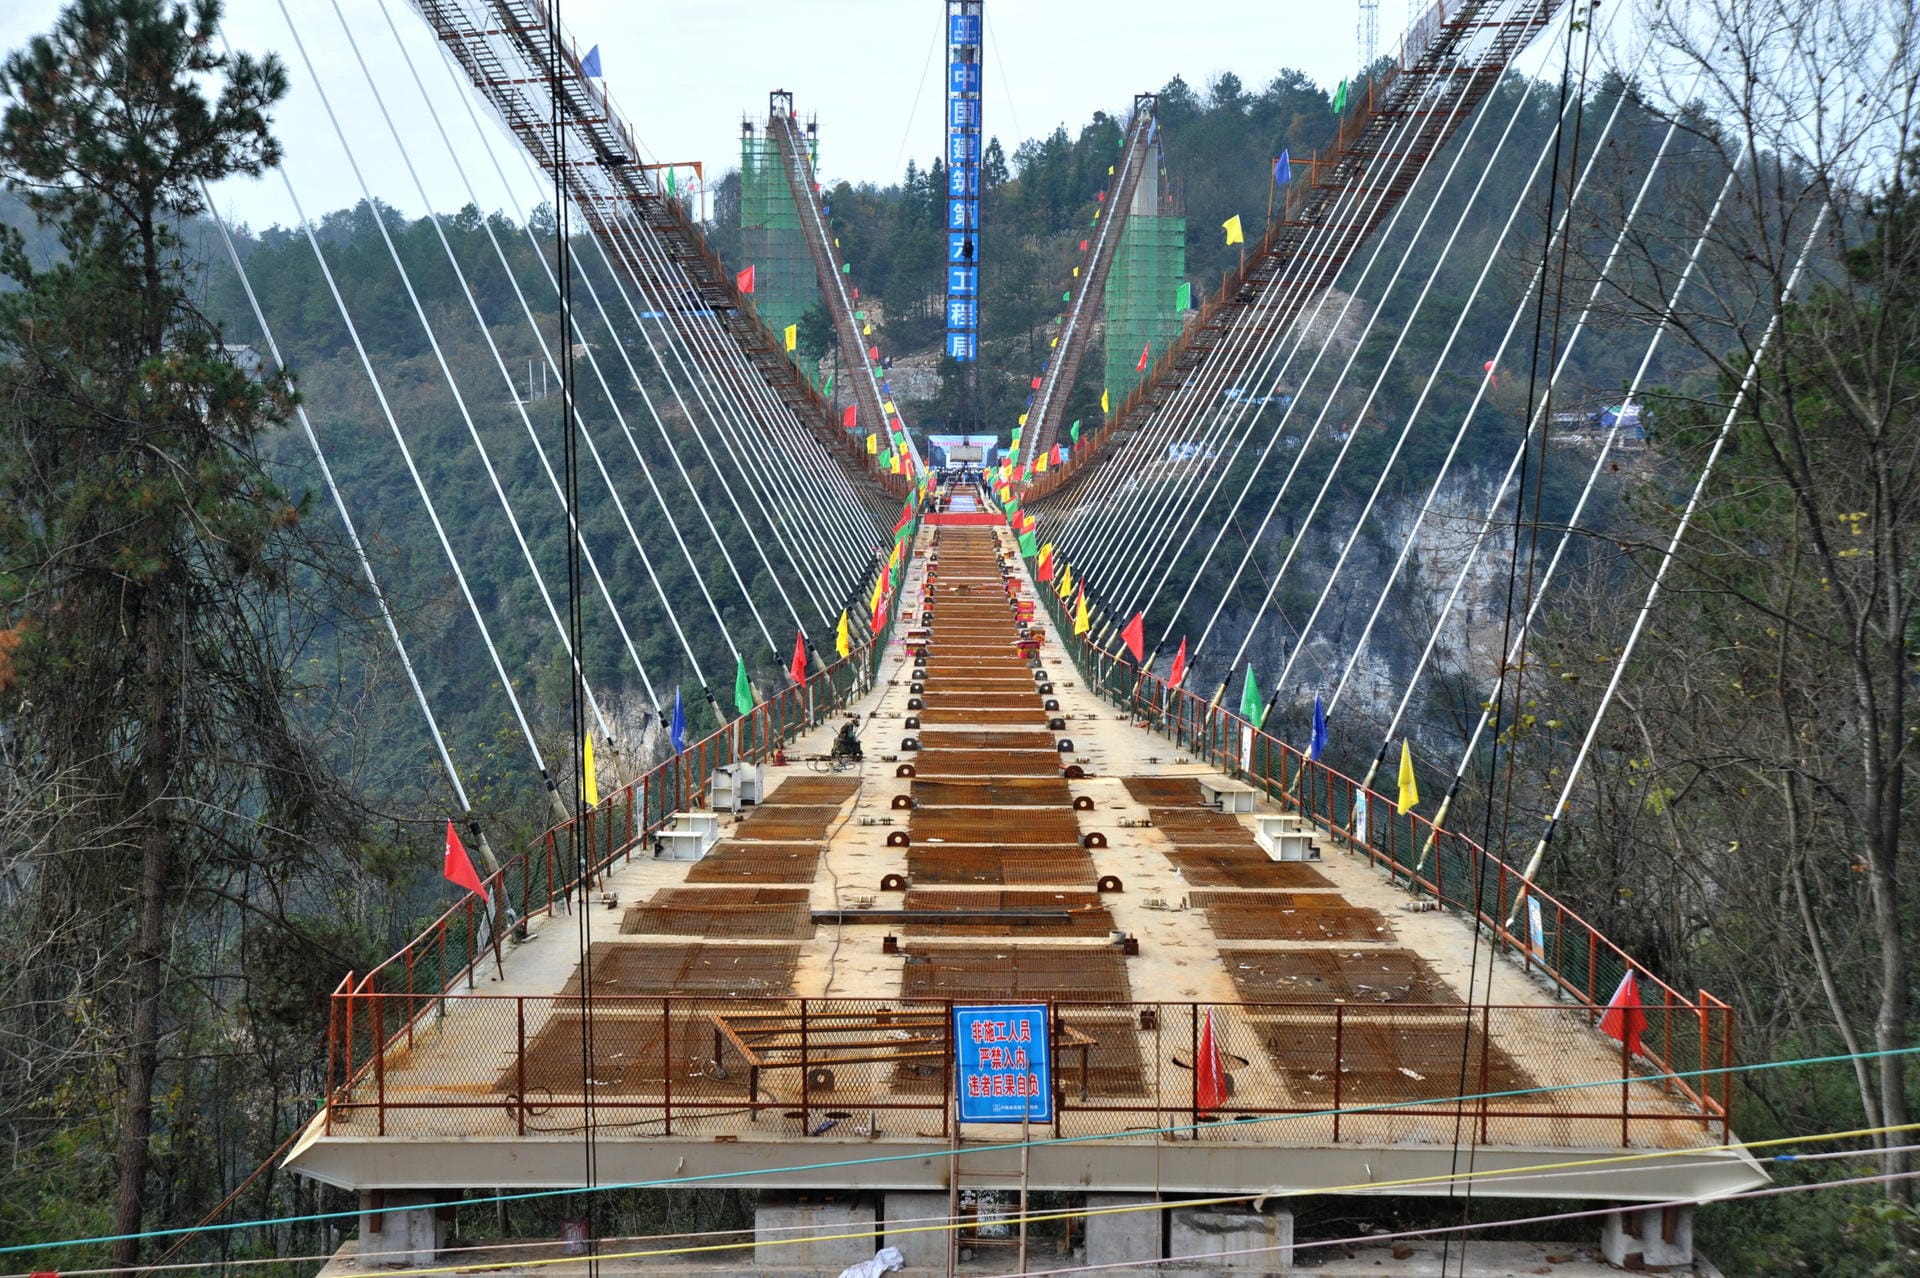 Sechs Meter breit ist die schwindelerregende Attraktion. Von der Brücke sollen Besucher auch den höchsten Bungeesprung der Welt wagen können.